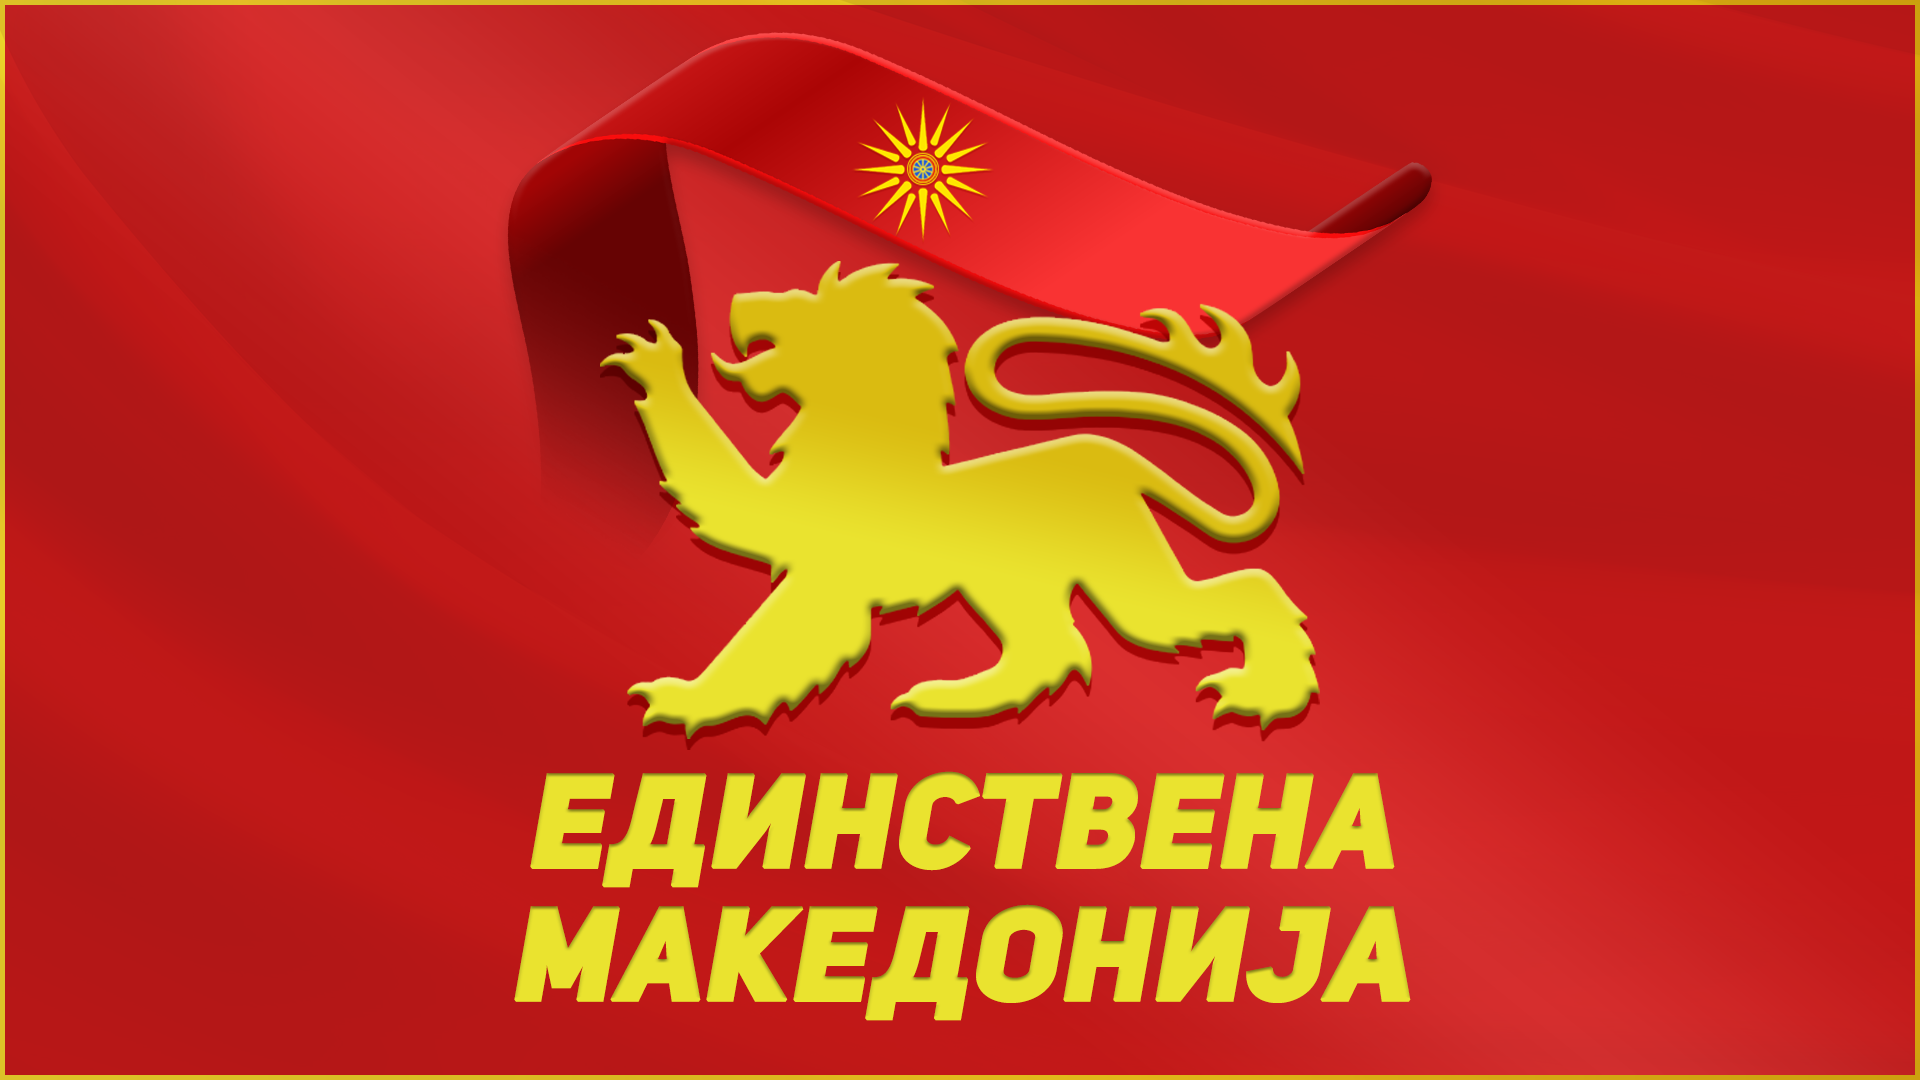 Единствена Македонија: Пендаровски да каже со име и презиме кој и од каде 30 години зема странски пари - од Русија или од Сорос и ЦИА